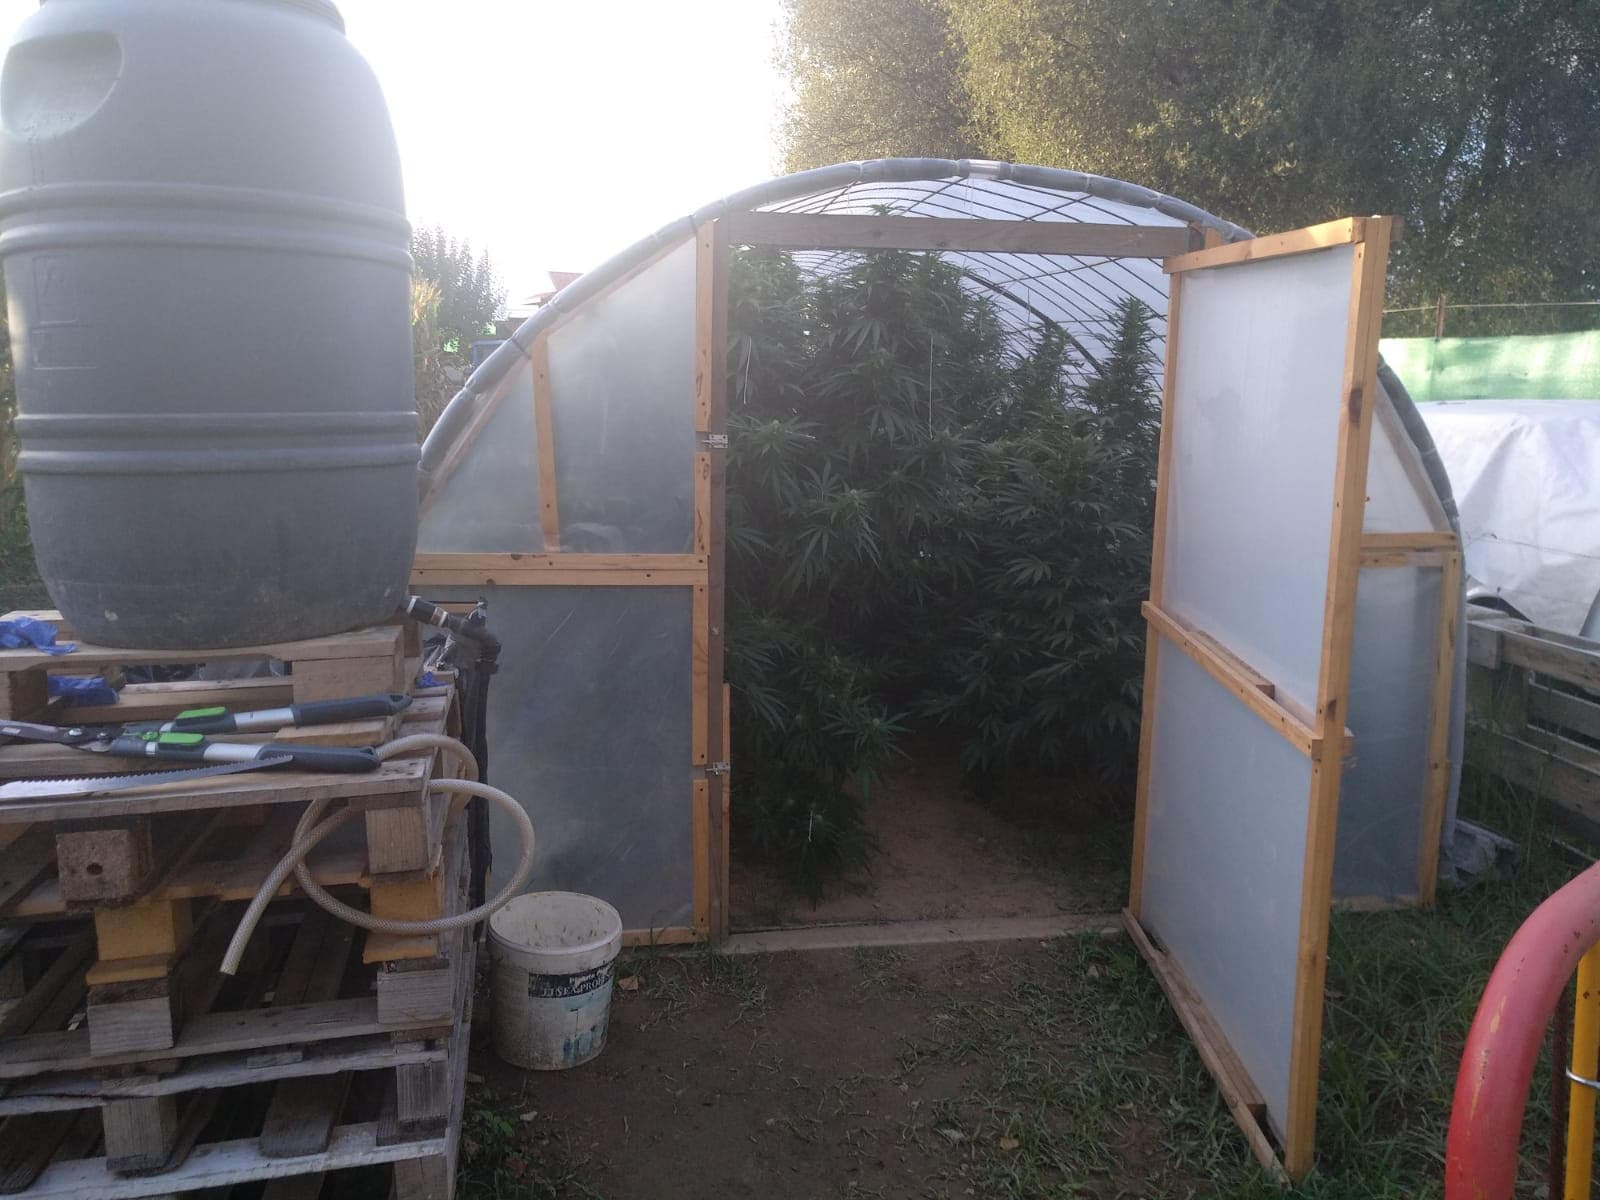 Un detenido en Bárcena del Bierzo por cultivar ocho plantas de marihuana en un invernadero